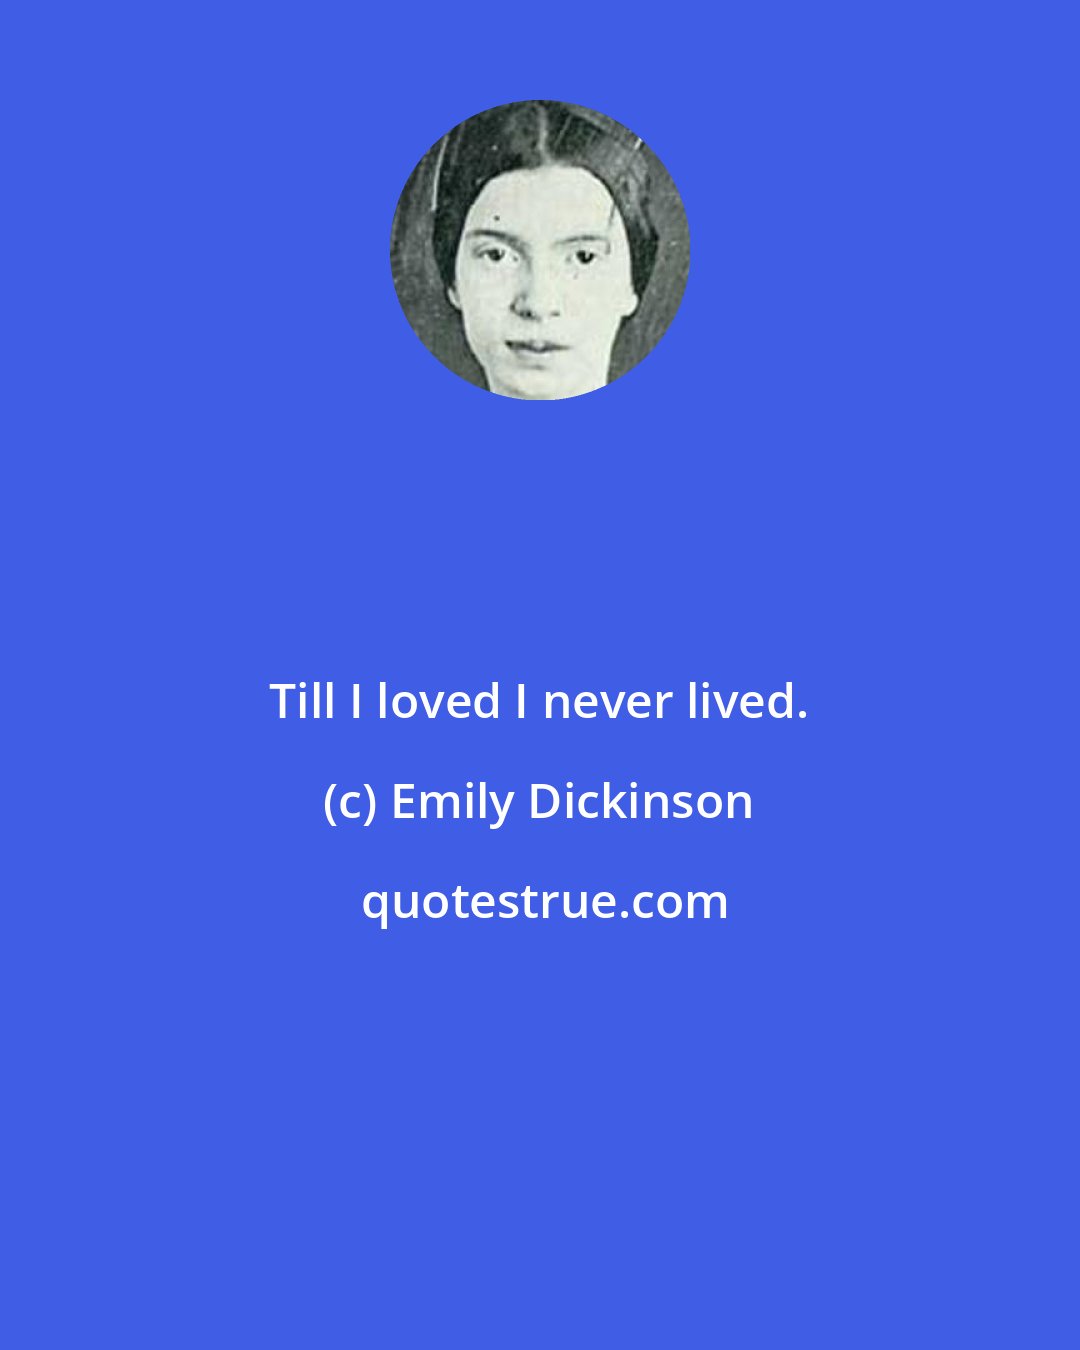 Emily Dickinson: Till I loved I never lived.